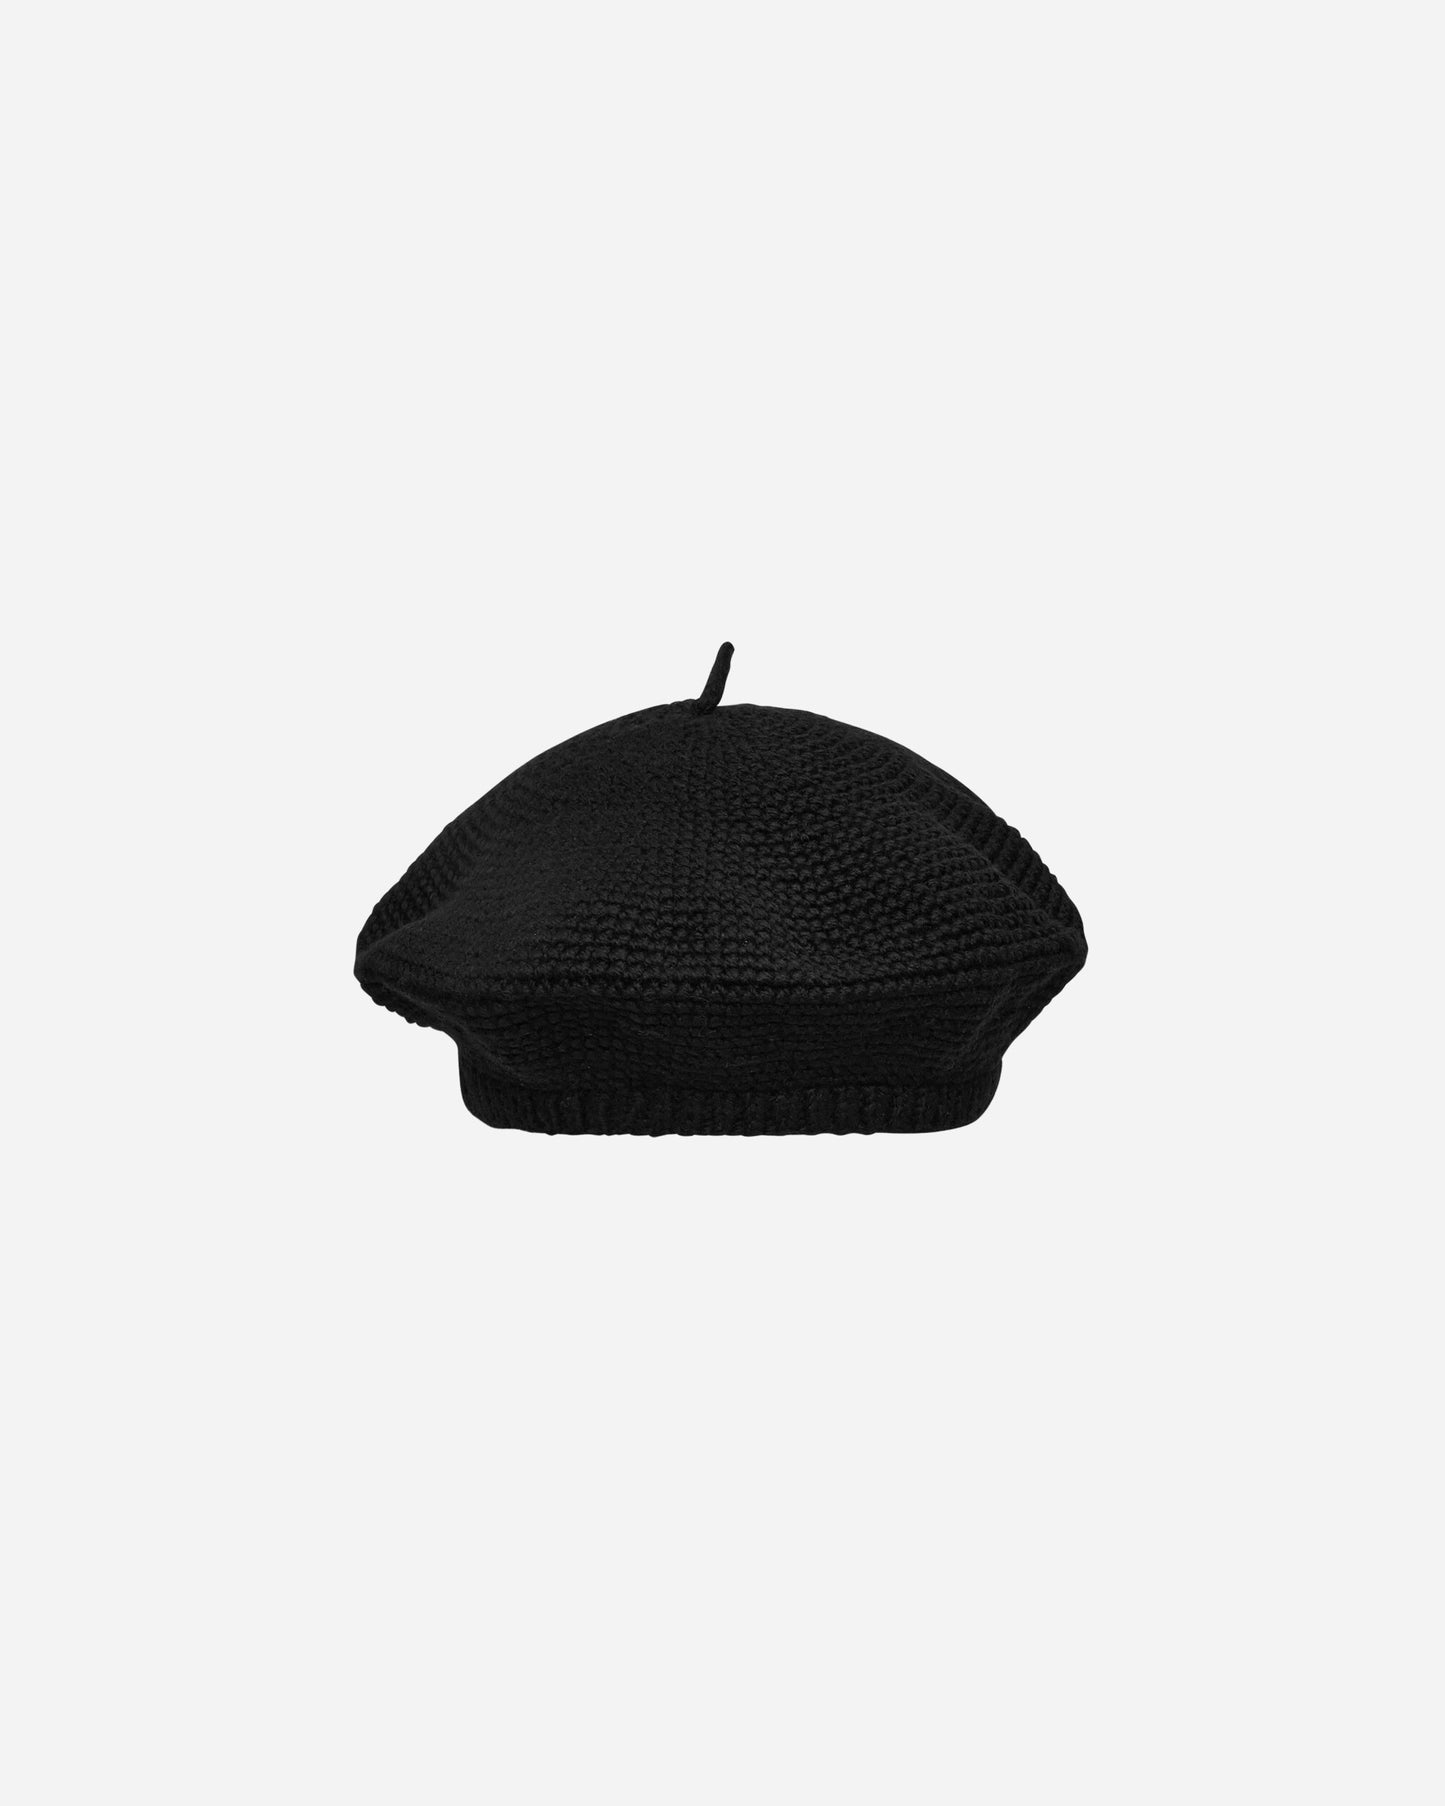 Bode Crochet Beret Black Hats Beanies MRS24KA011 1